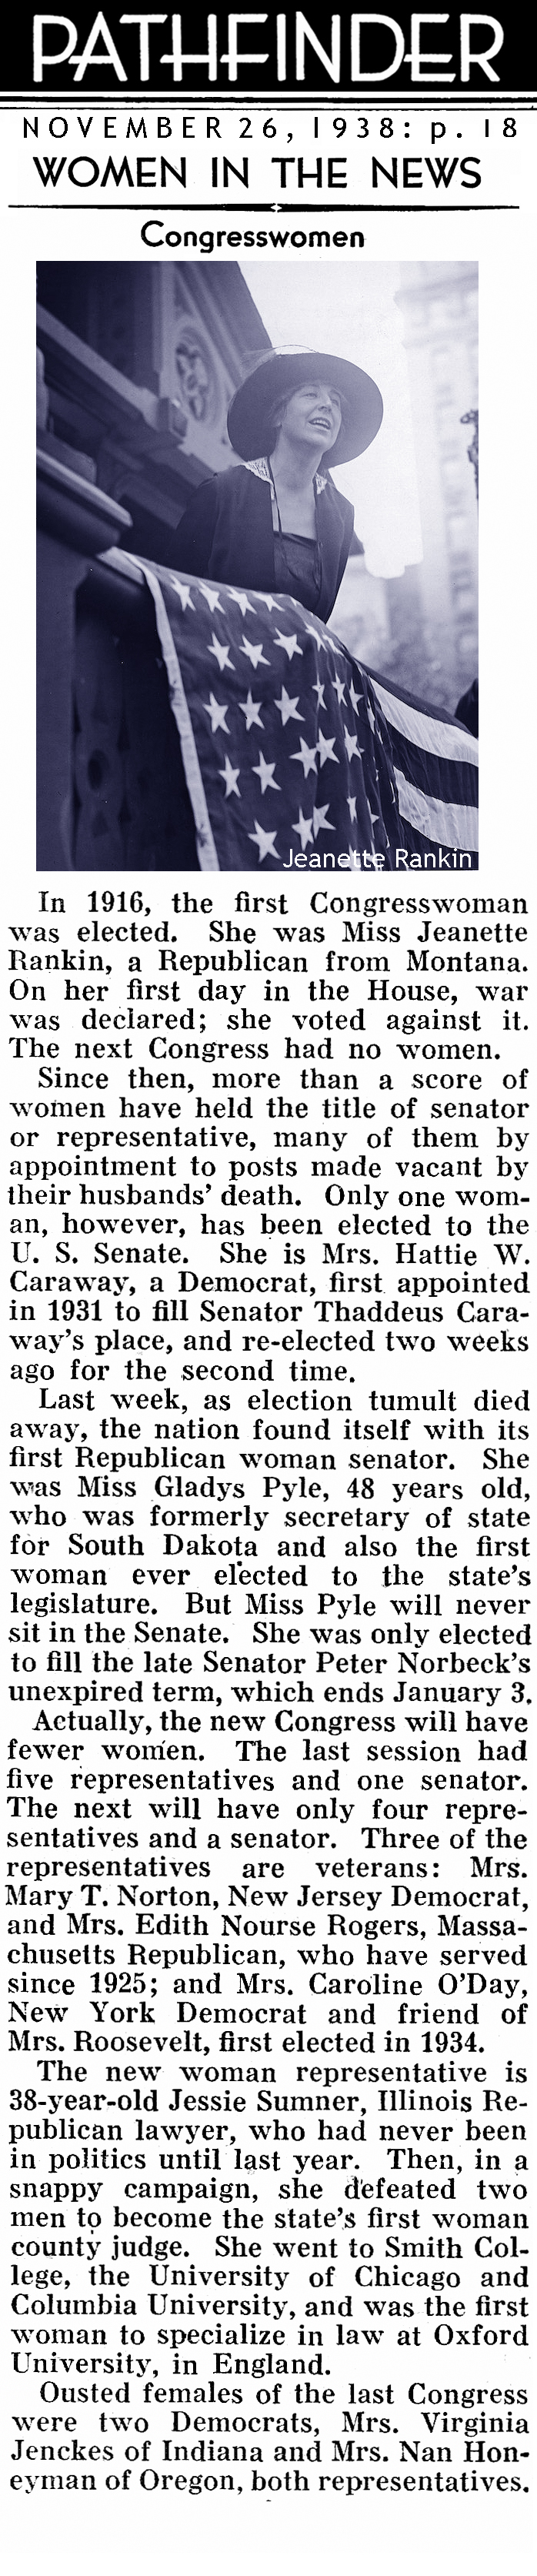 The First Congresswomen <BR>(Pathfinder Magazine, 1938)